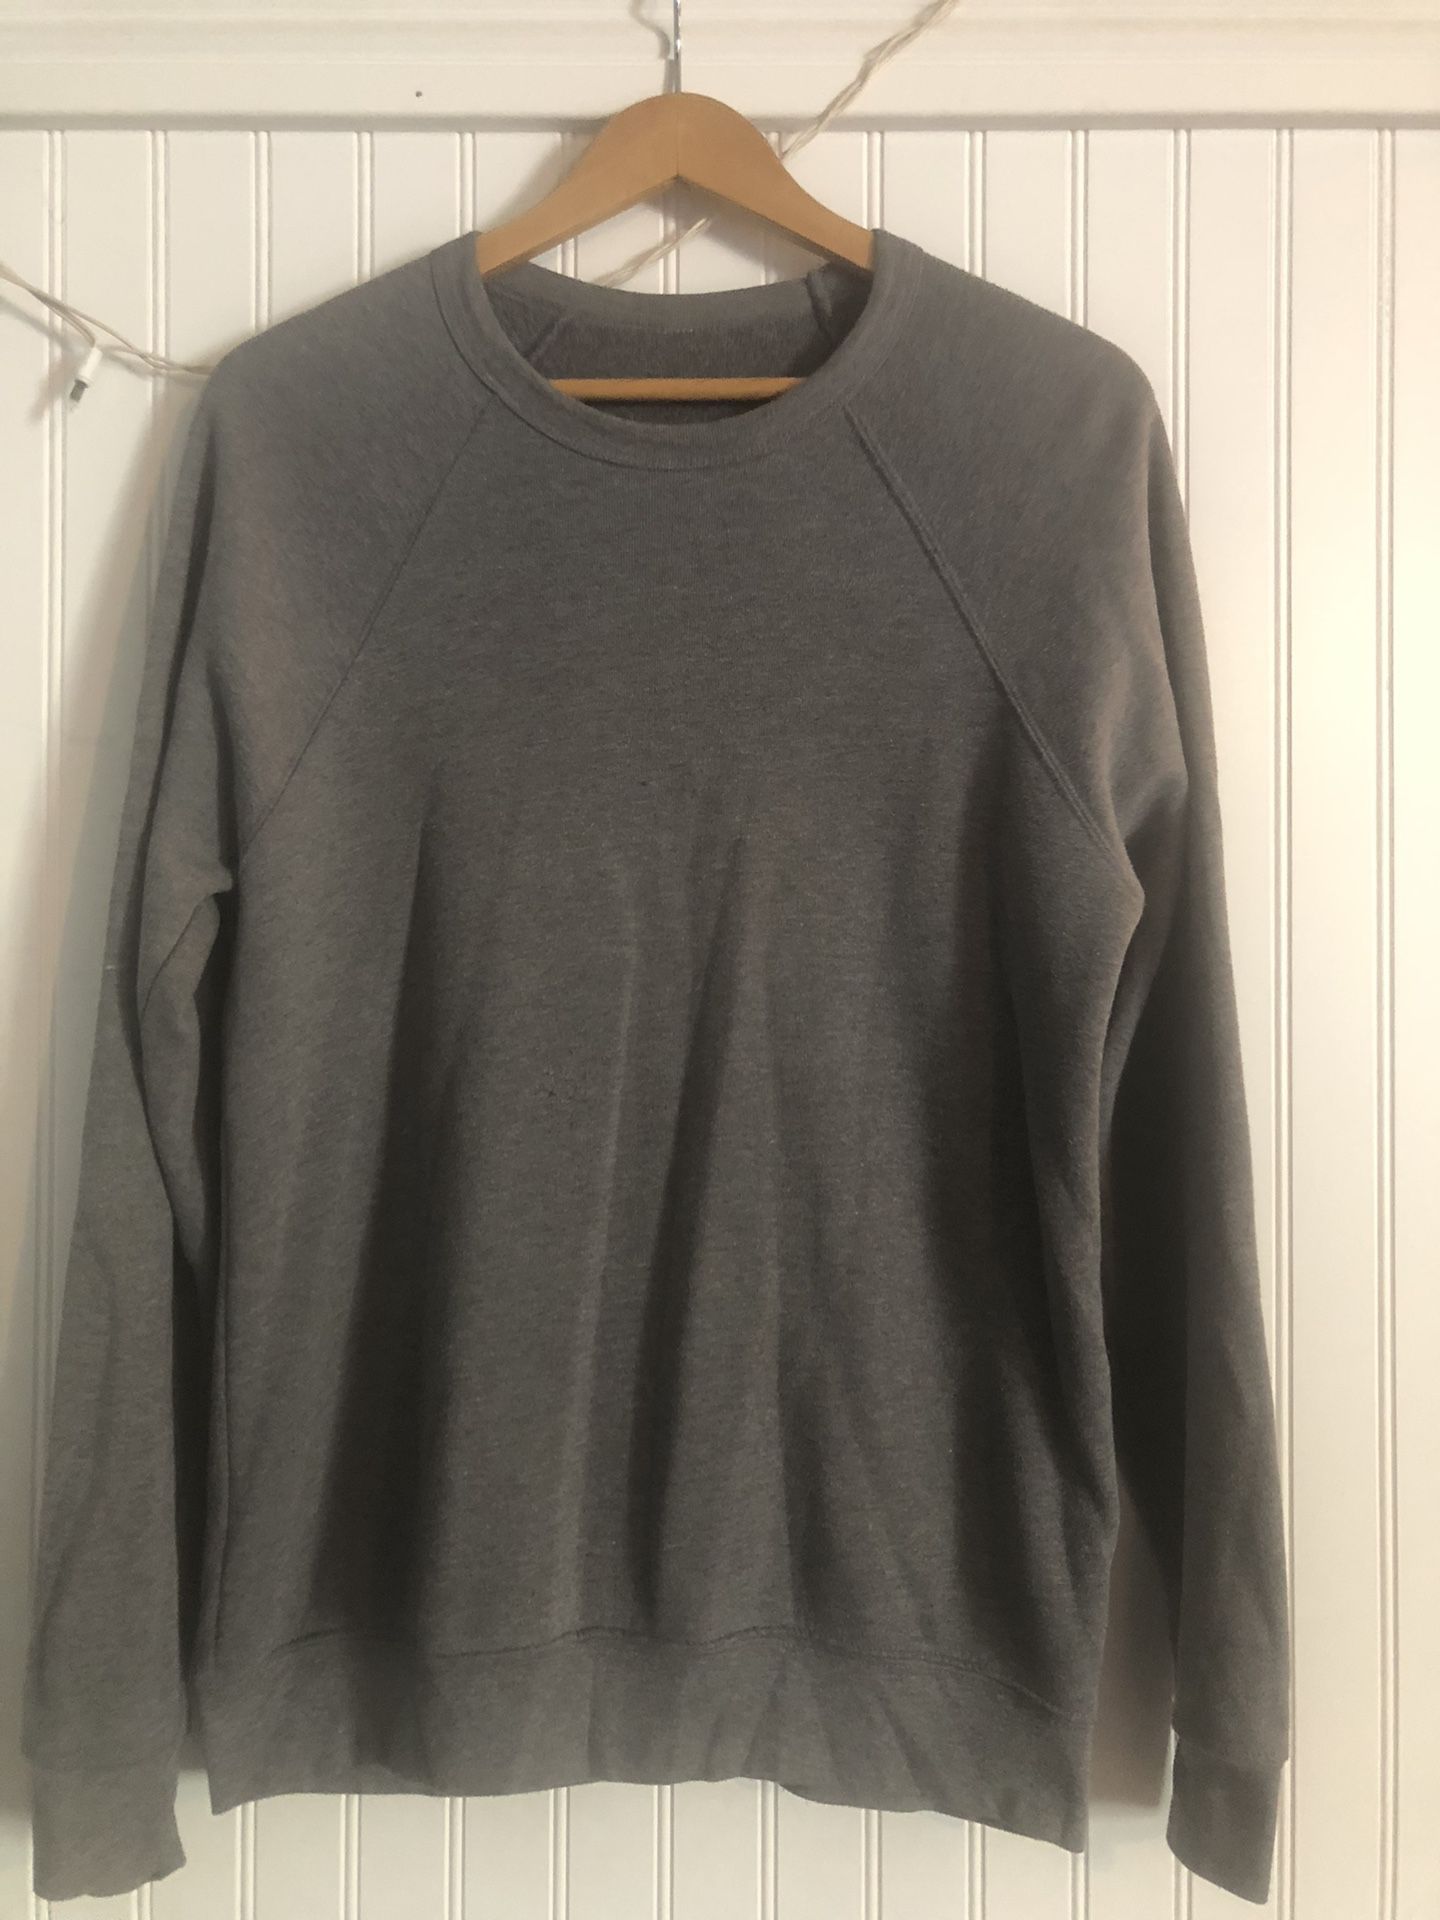 Plain Grey Crewneck Sweater